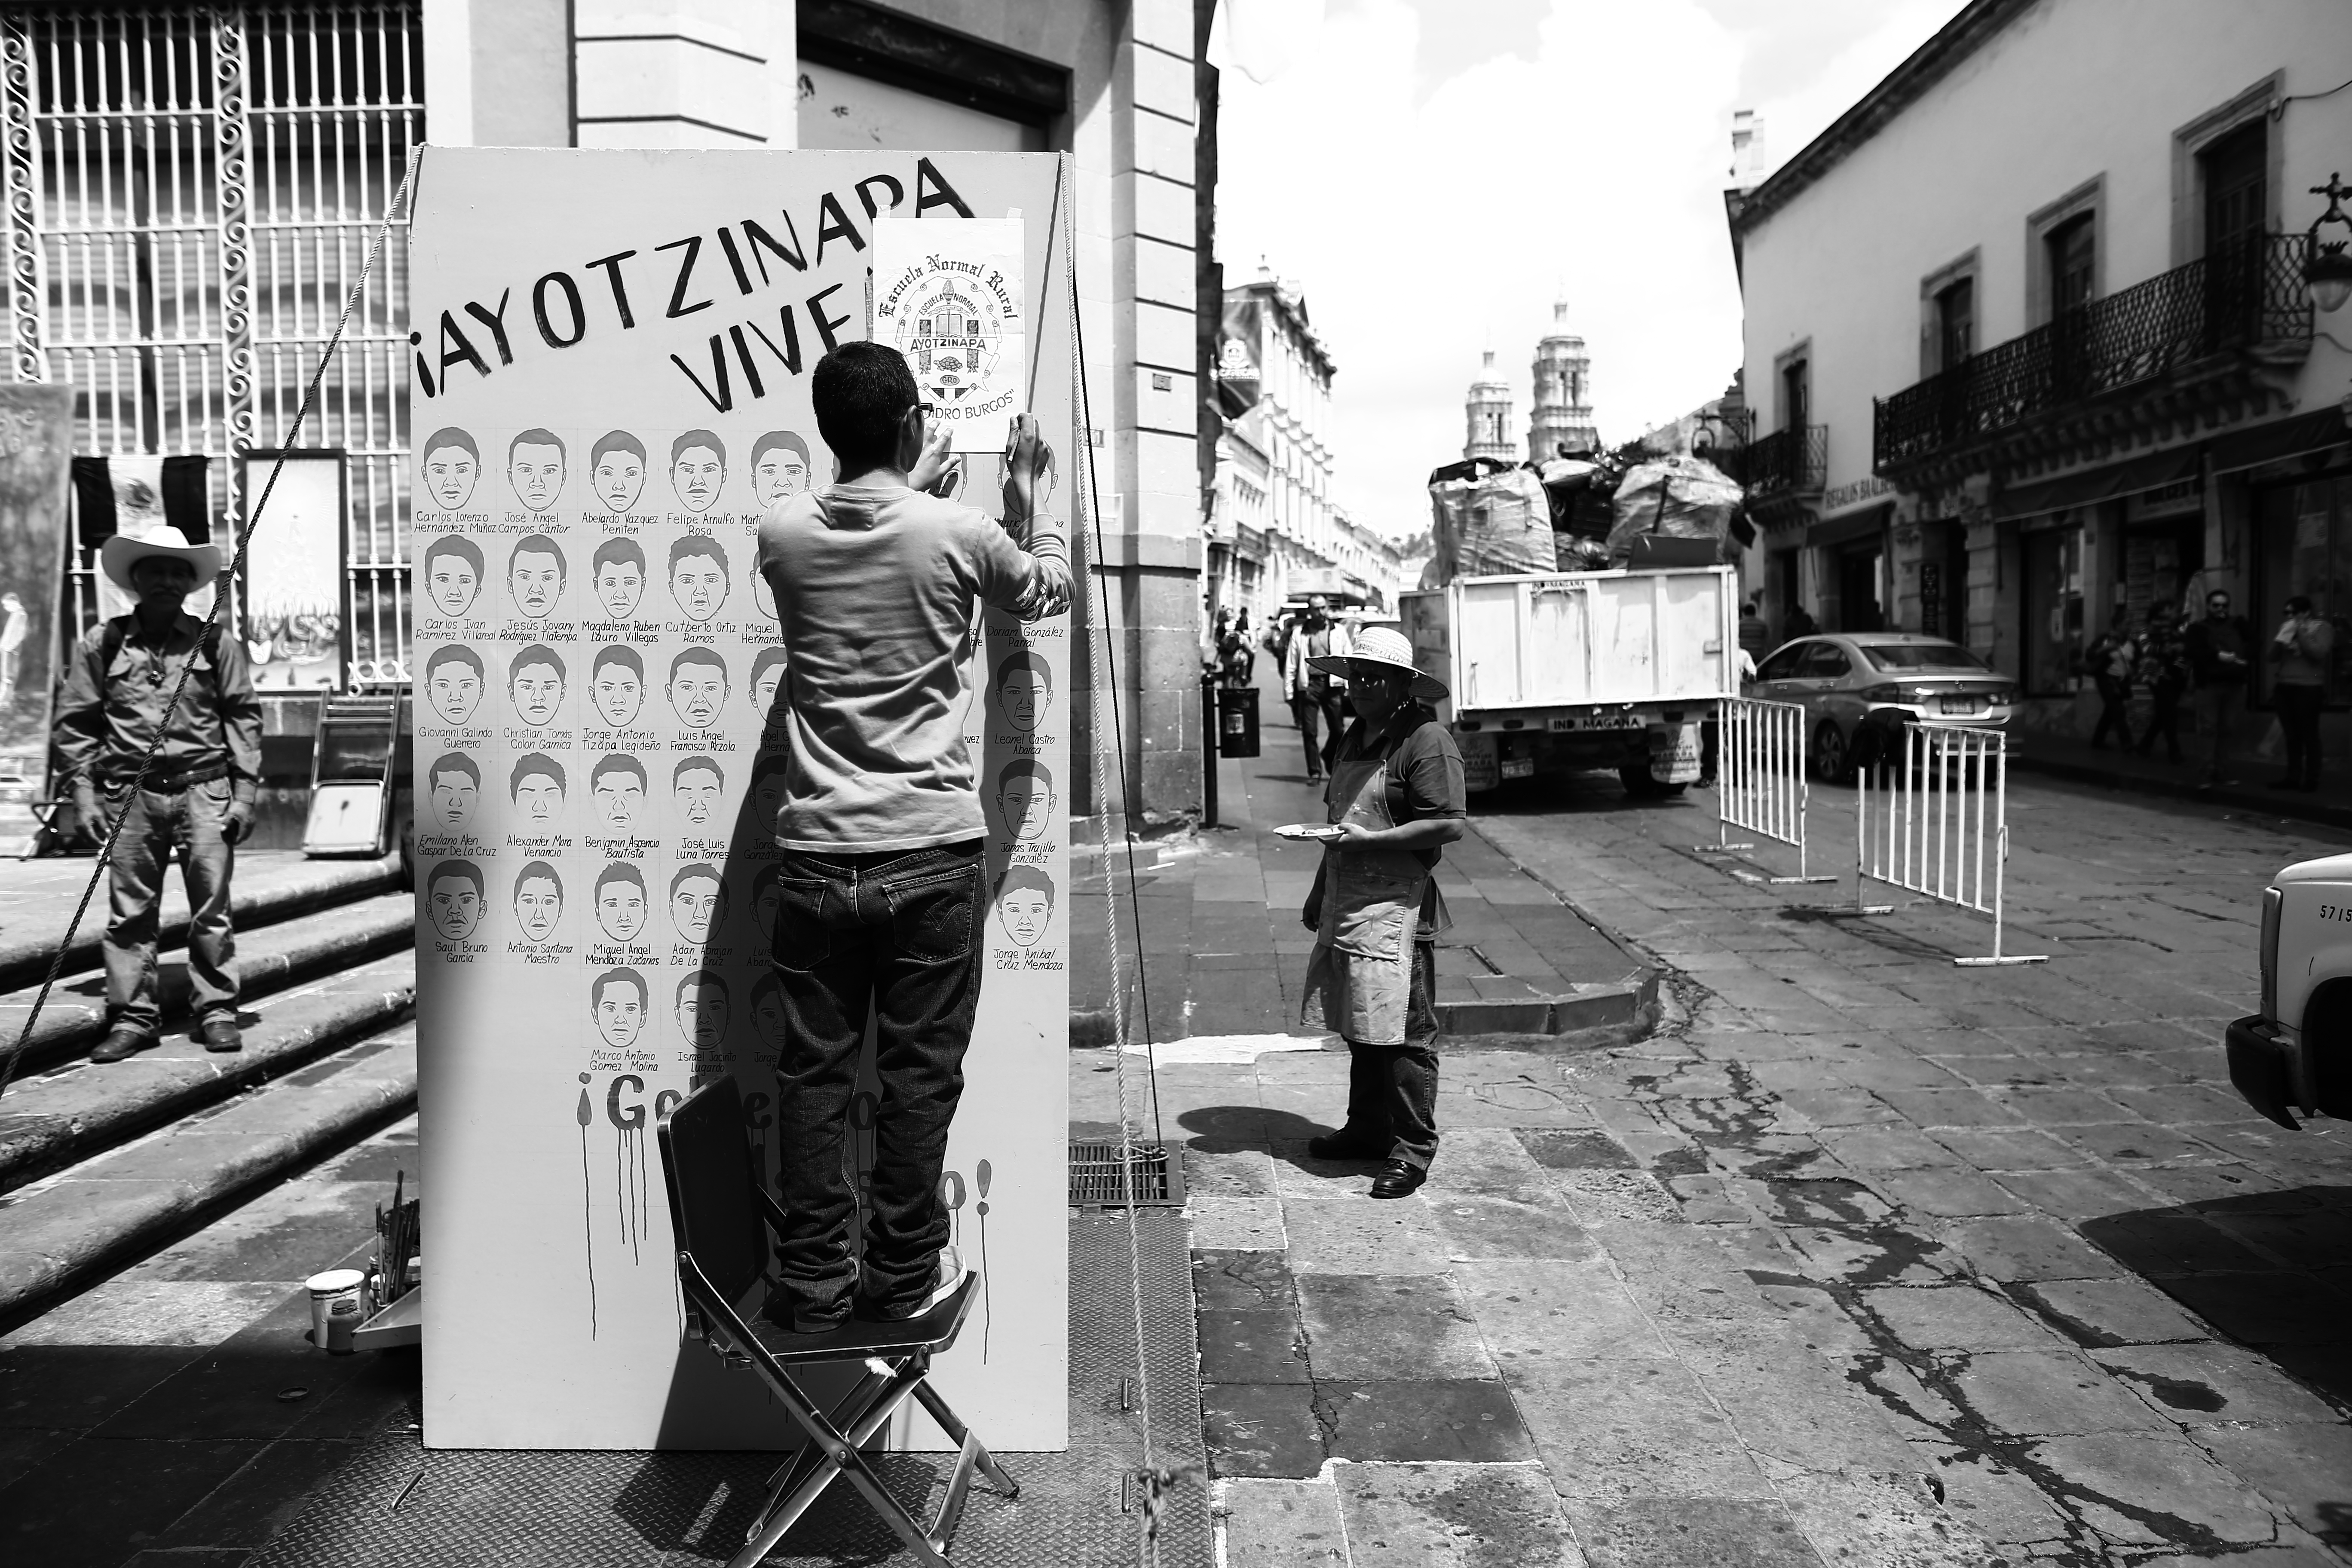 Jóvenes durante la conmemoración del segundo aniversario de Ayotzinapa n foto: andrés sánchez